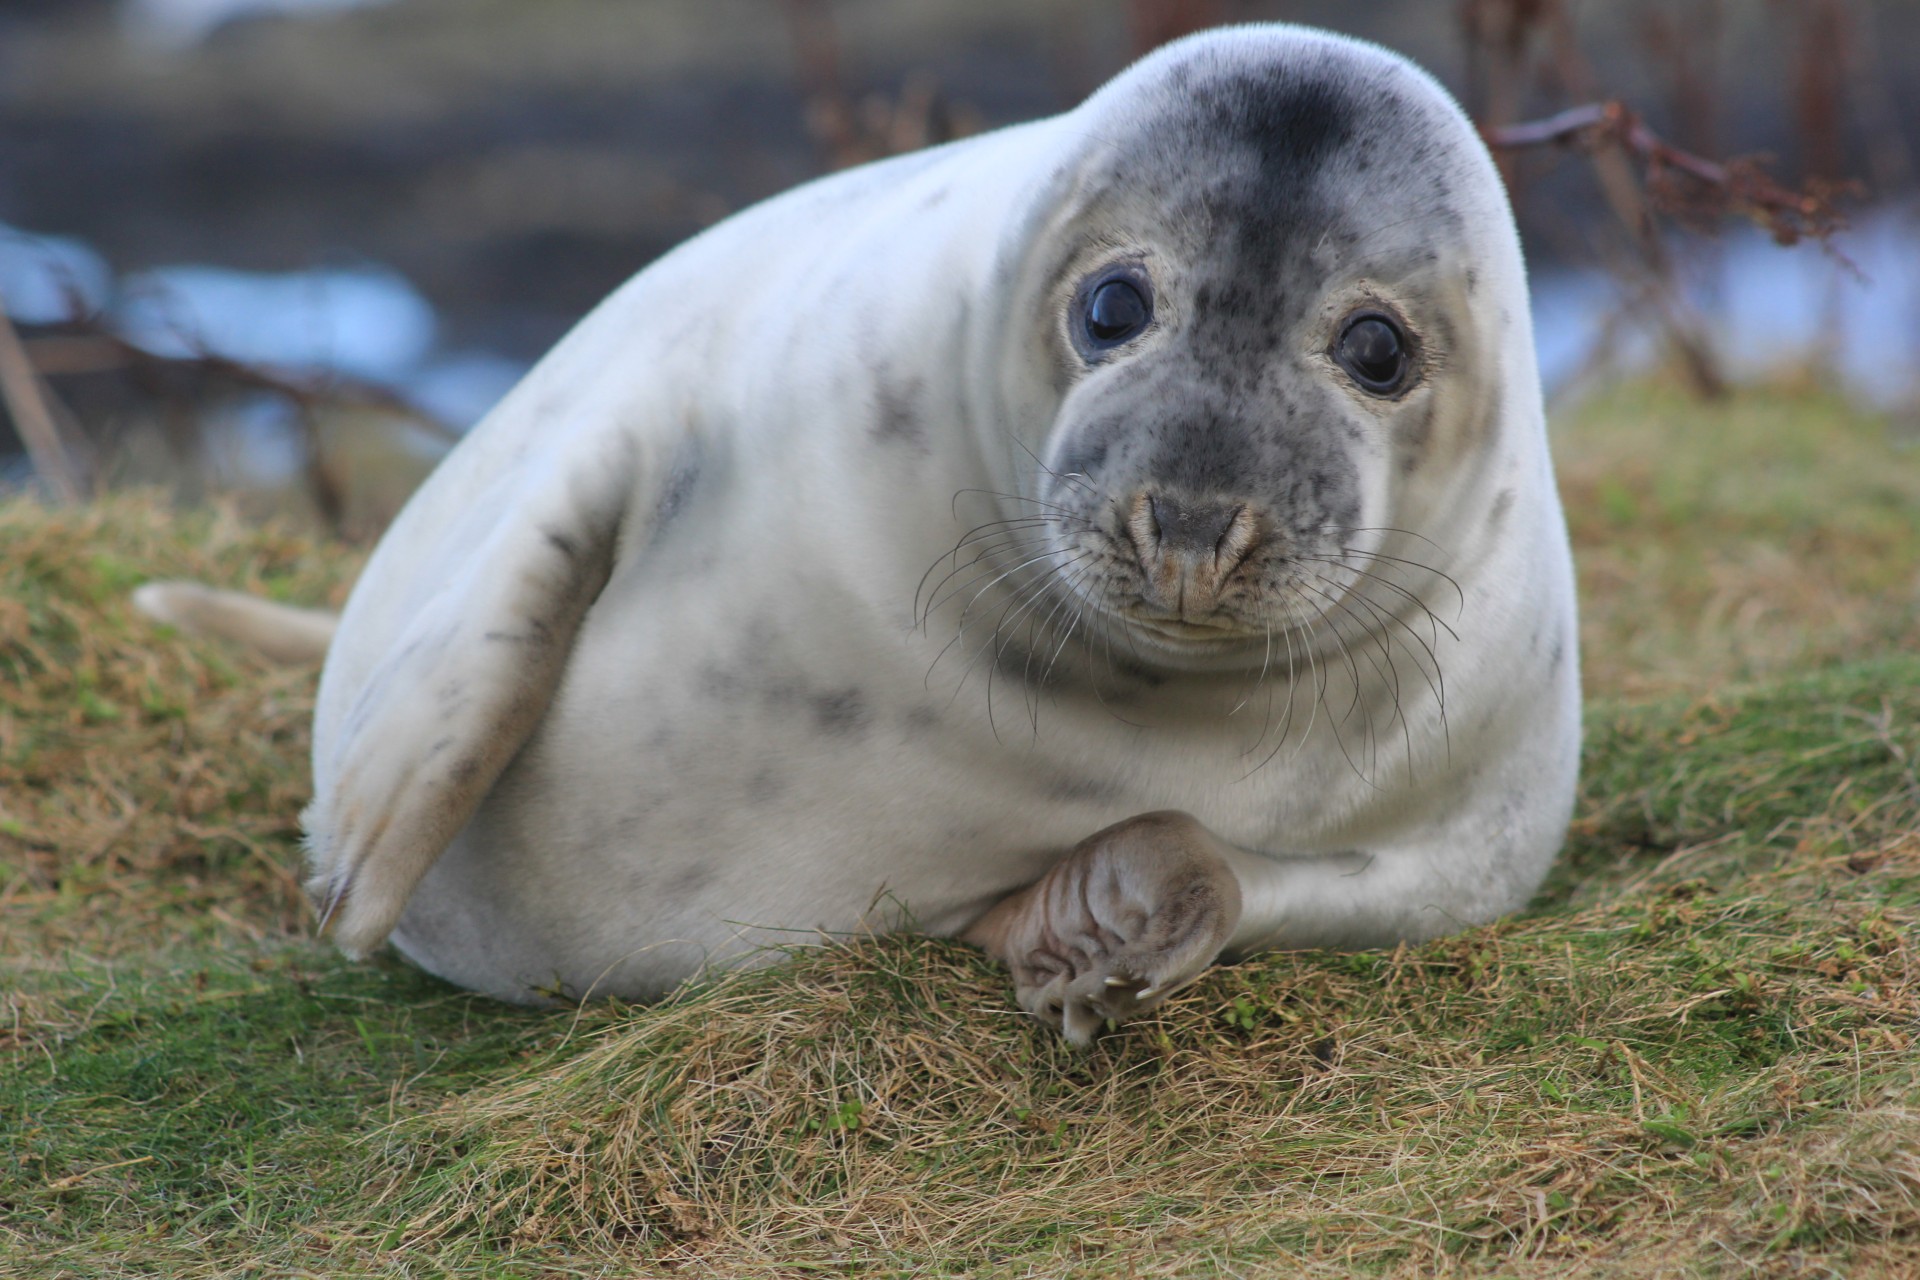 Toxic chemical study shows seal pups at risk despite ban